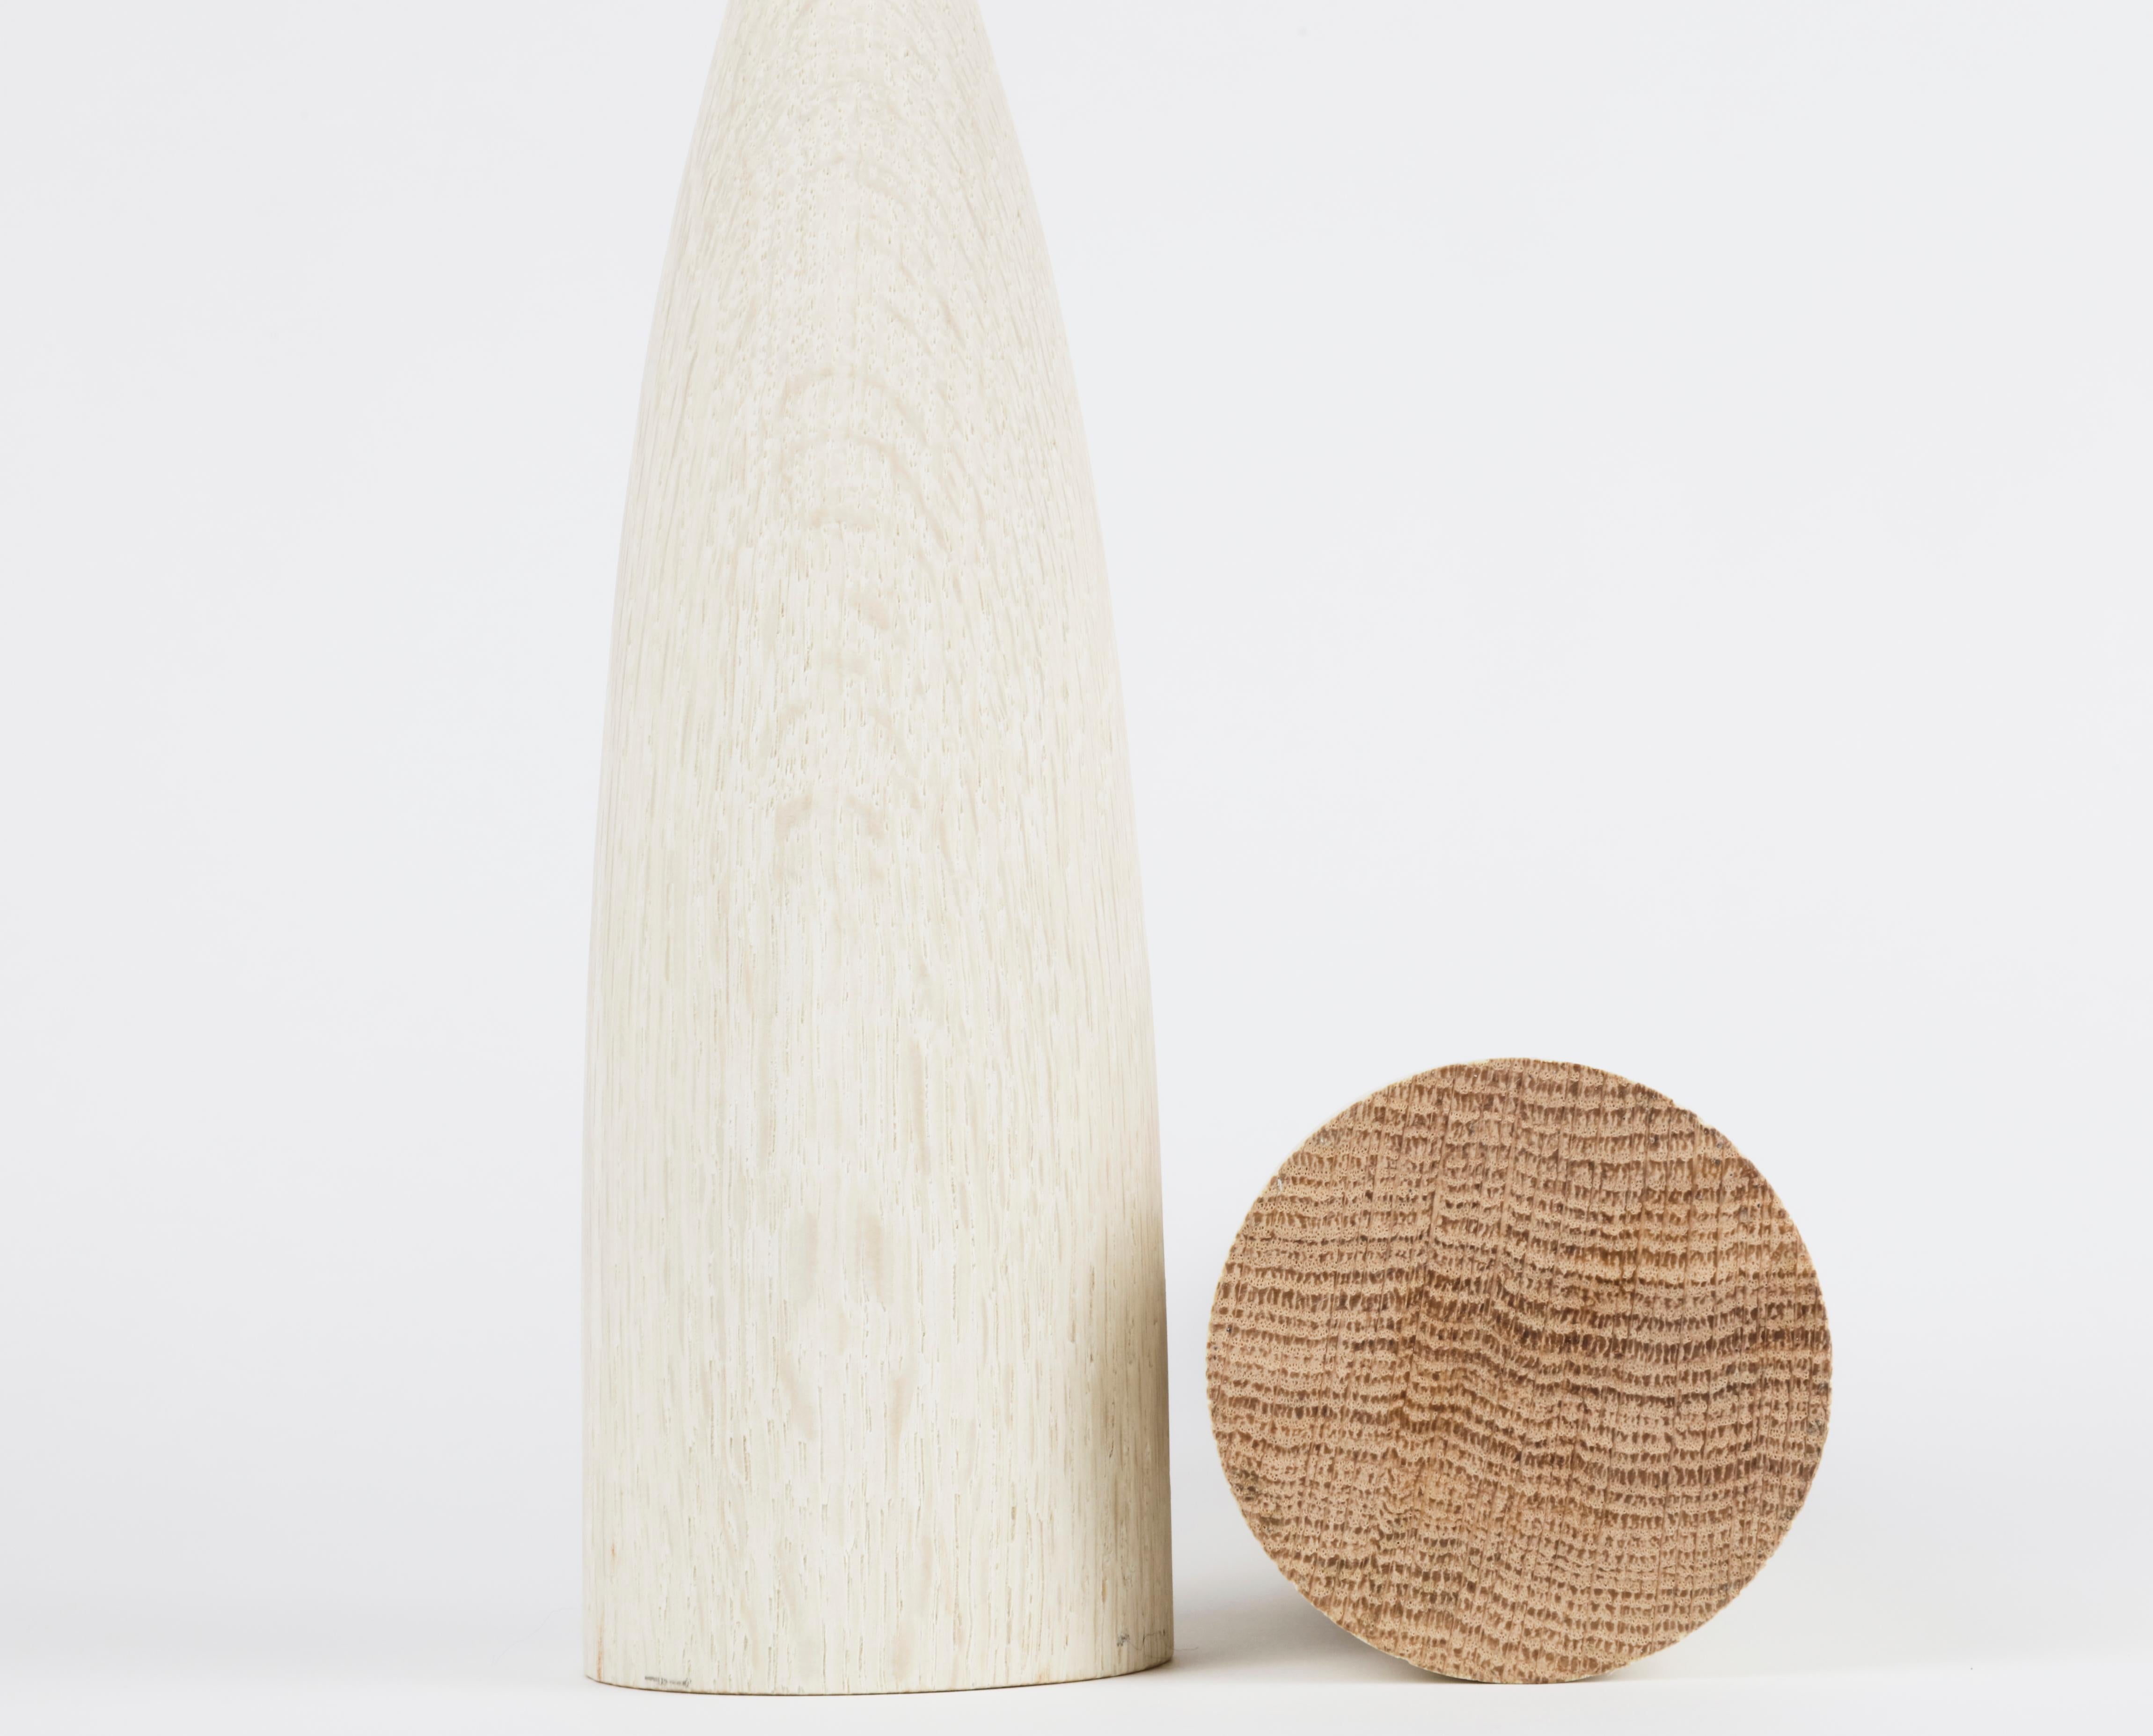 Pair of triple bleached wood candleholders

Measures: 10